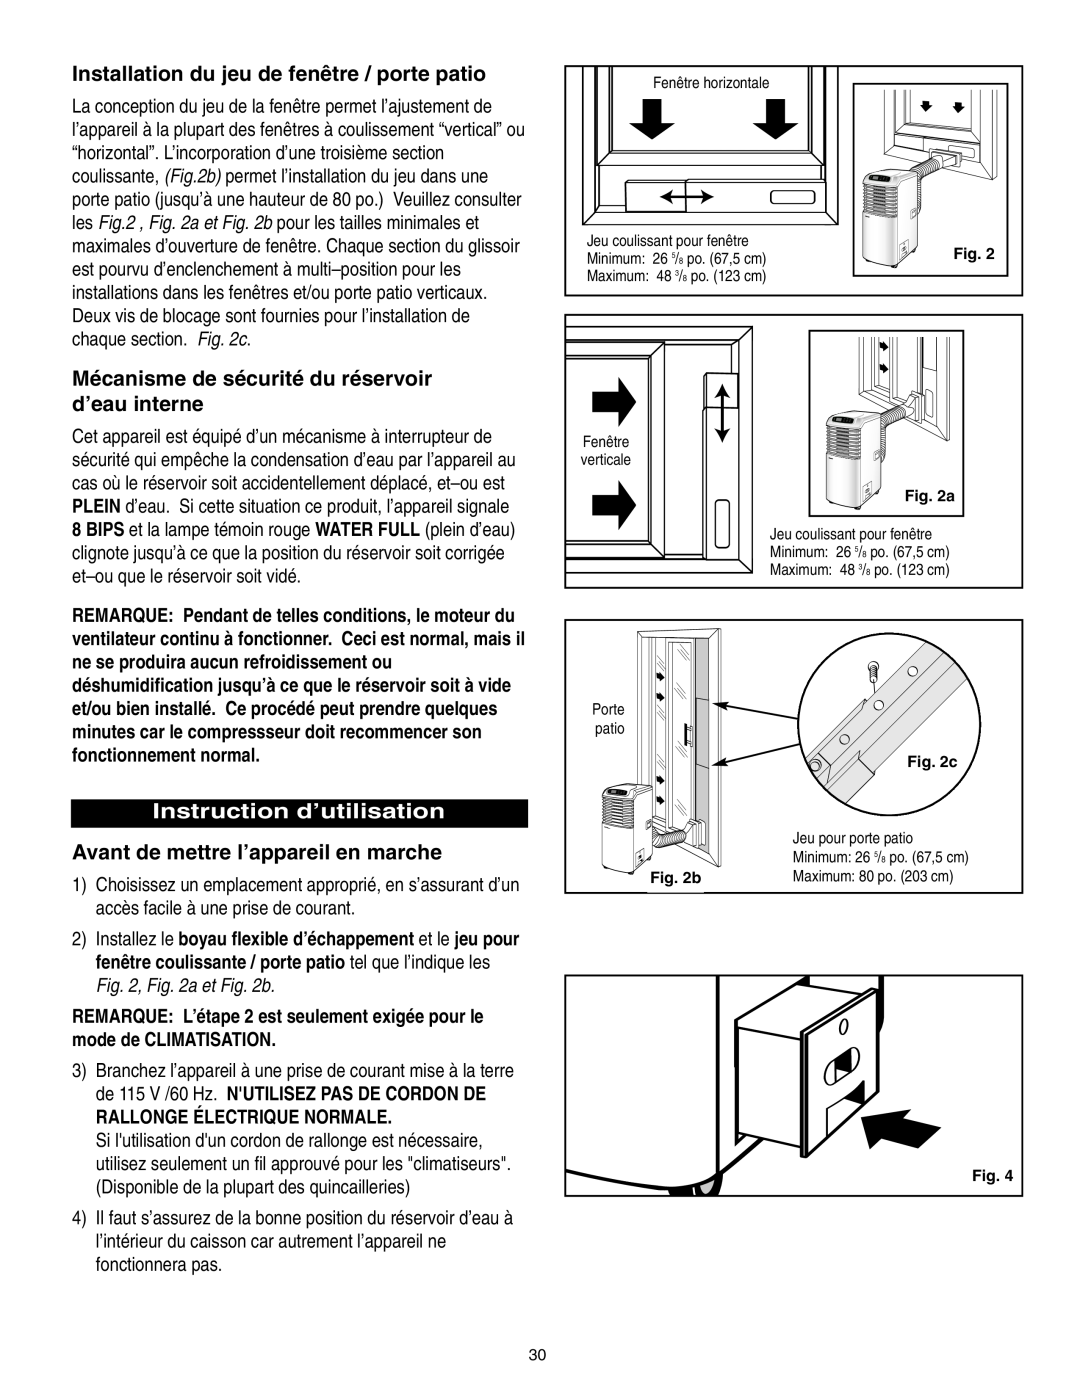 Danby SPAC8499 manual Installation du jeu de fenêtre / porte patio, Mécanisme de sécurité du réservoir d’eau interne 